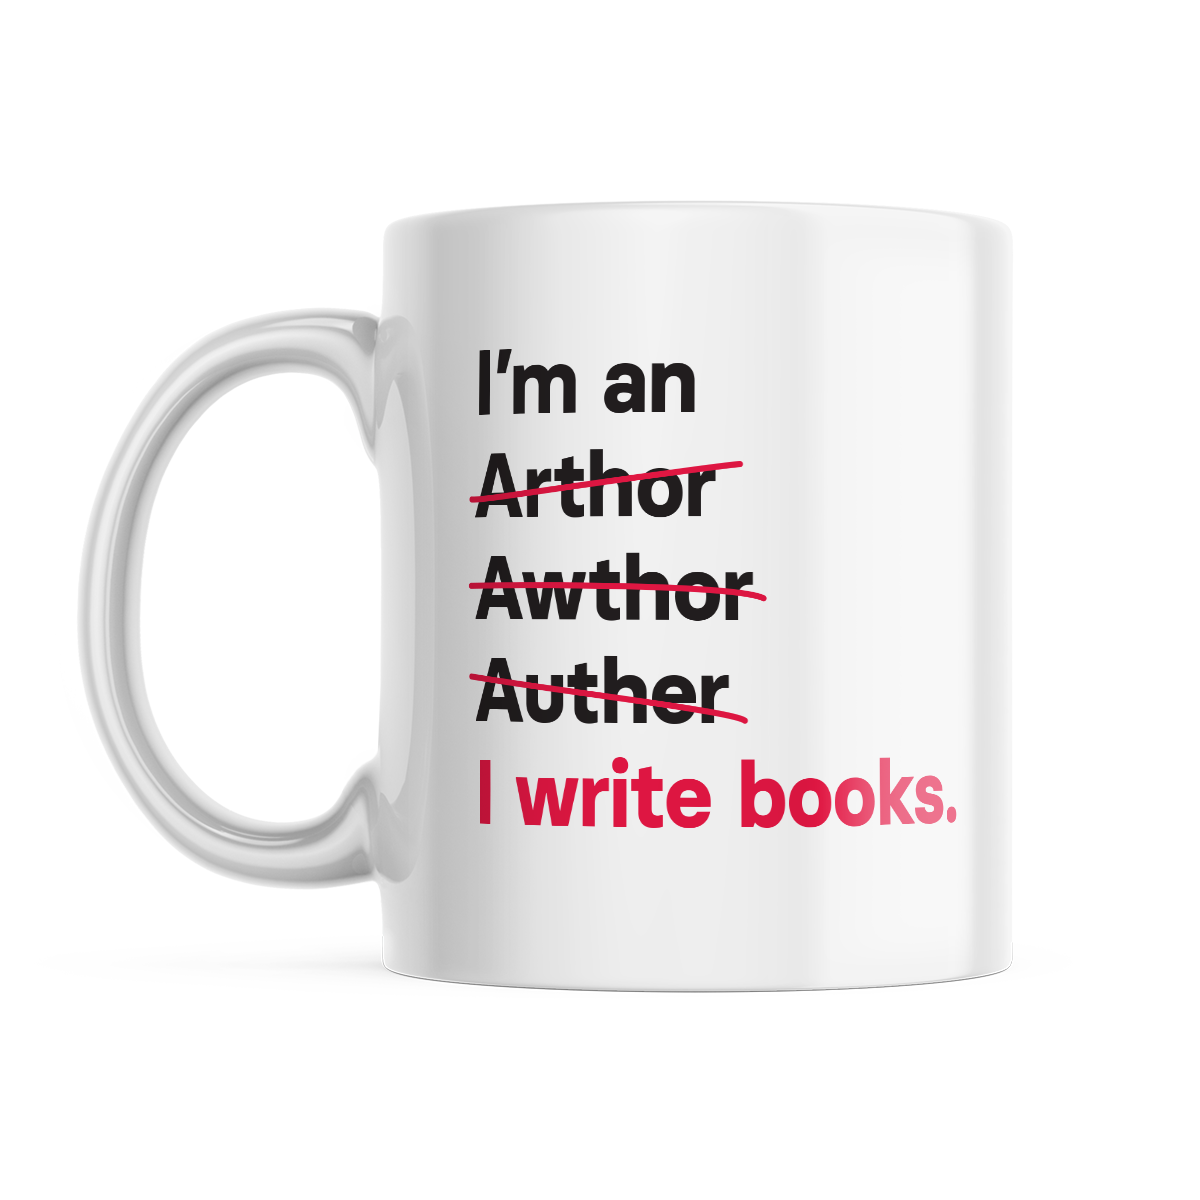 I'm an Author